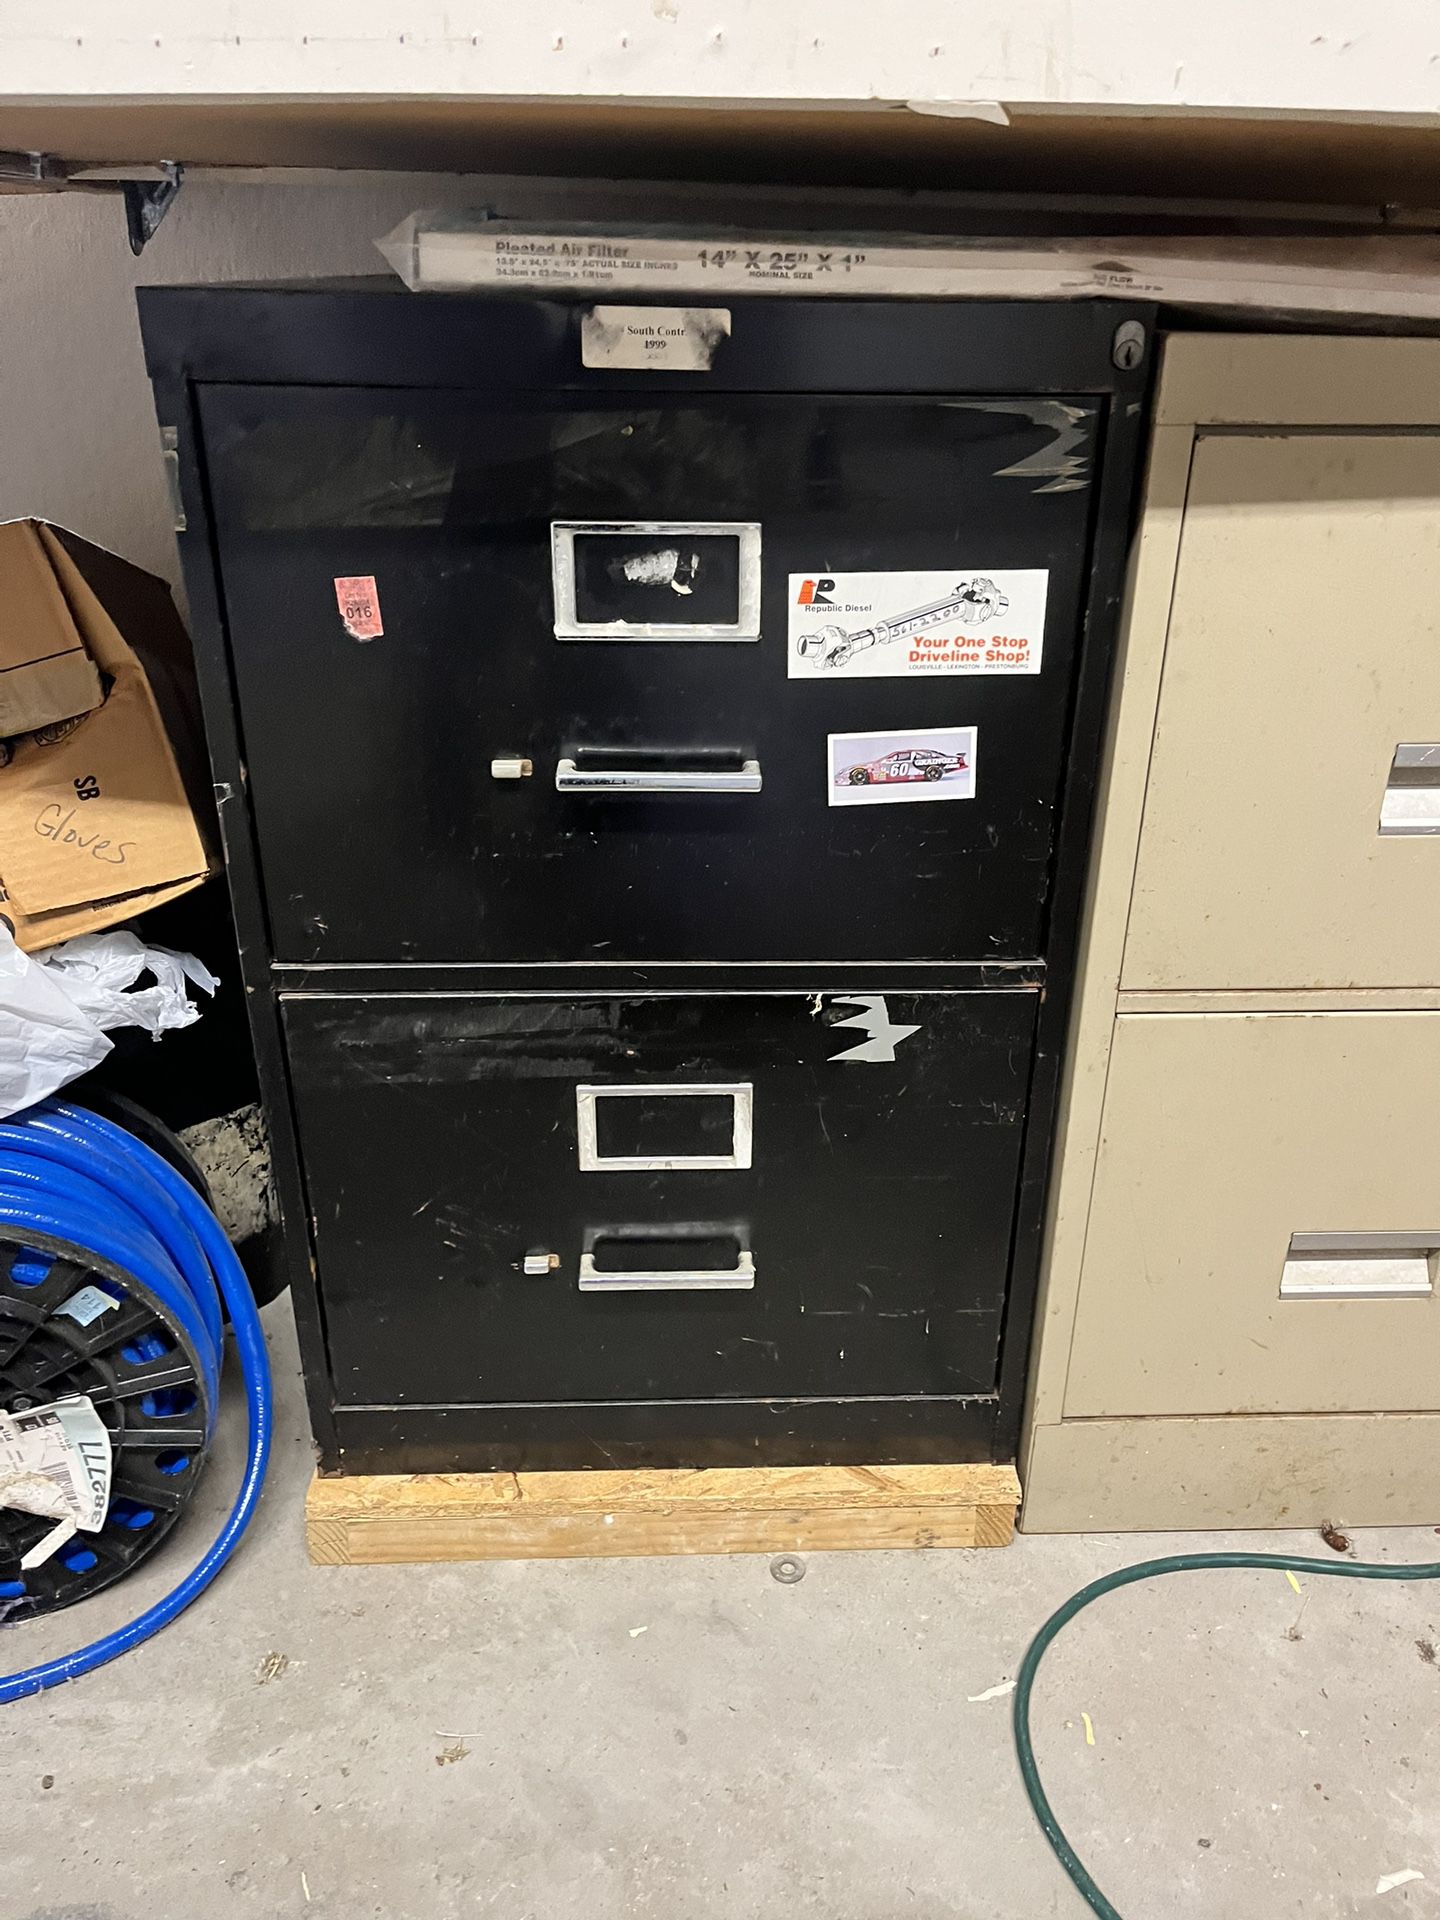 Heavy Duty File Cabinet